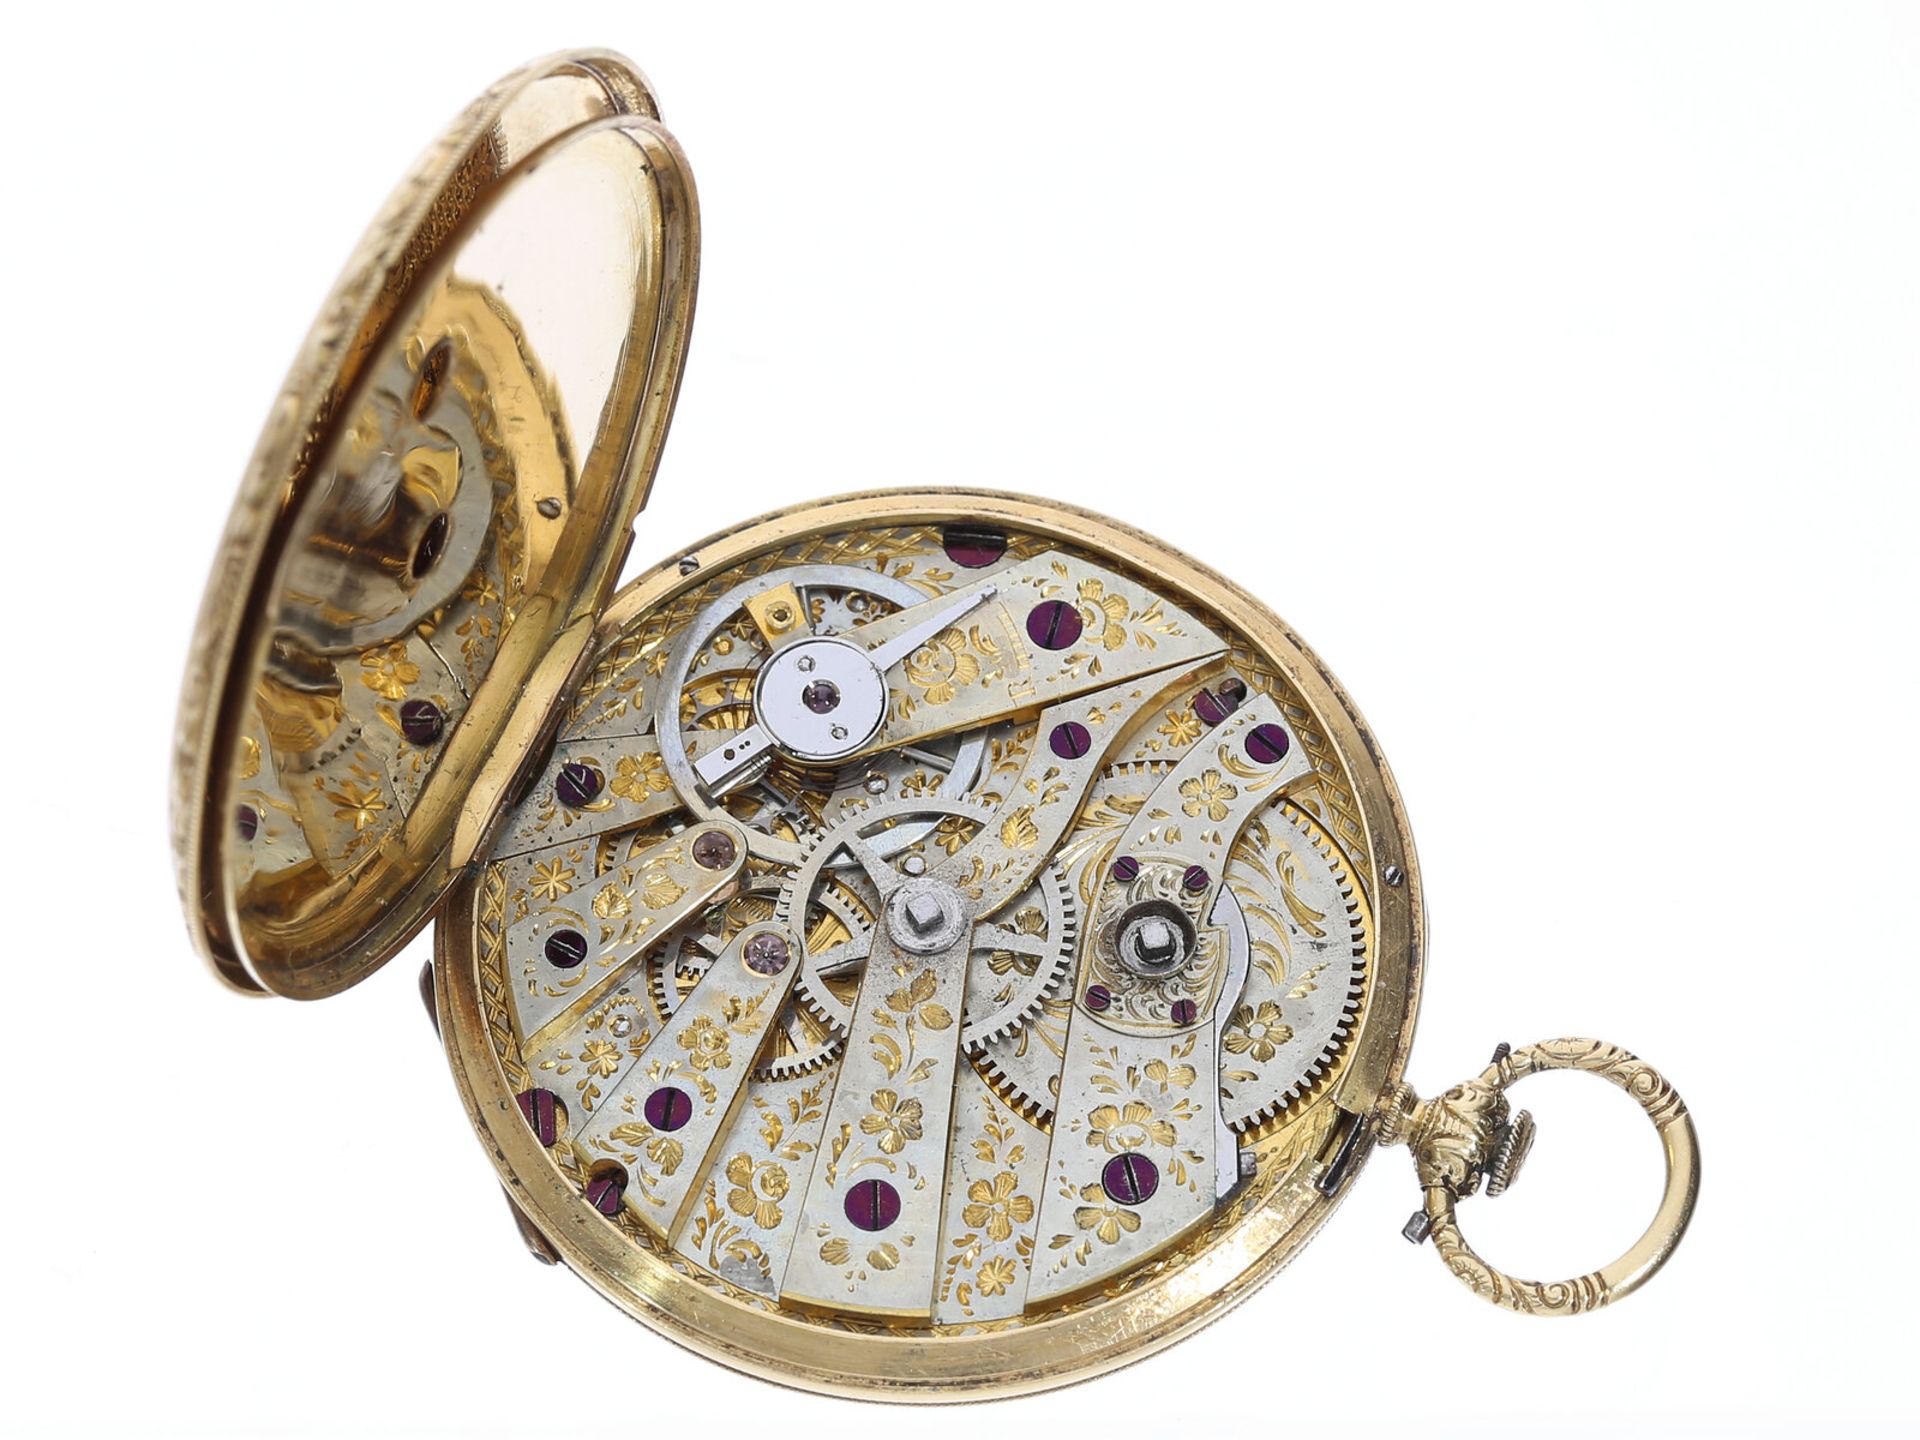 Goldene Taschenuhr sehr feiner Qualität, Sandoz & Fils No.54075, ca. 1840 - Bild 4 aus 4